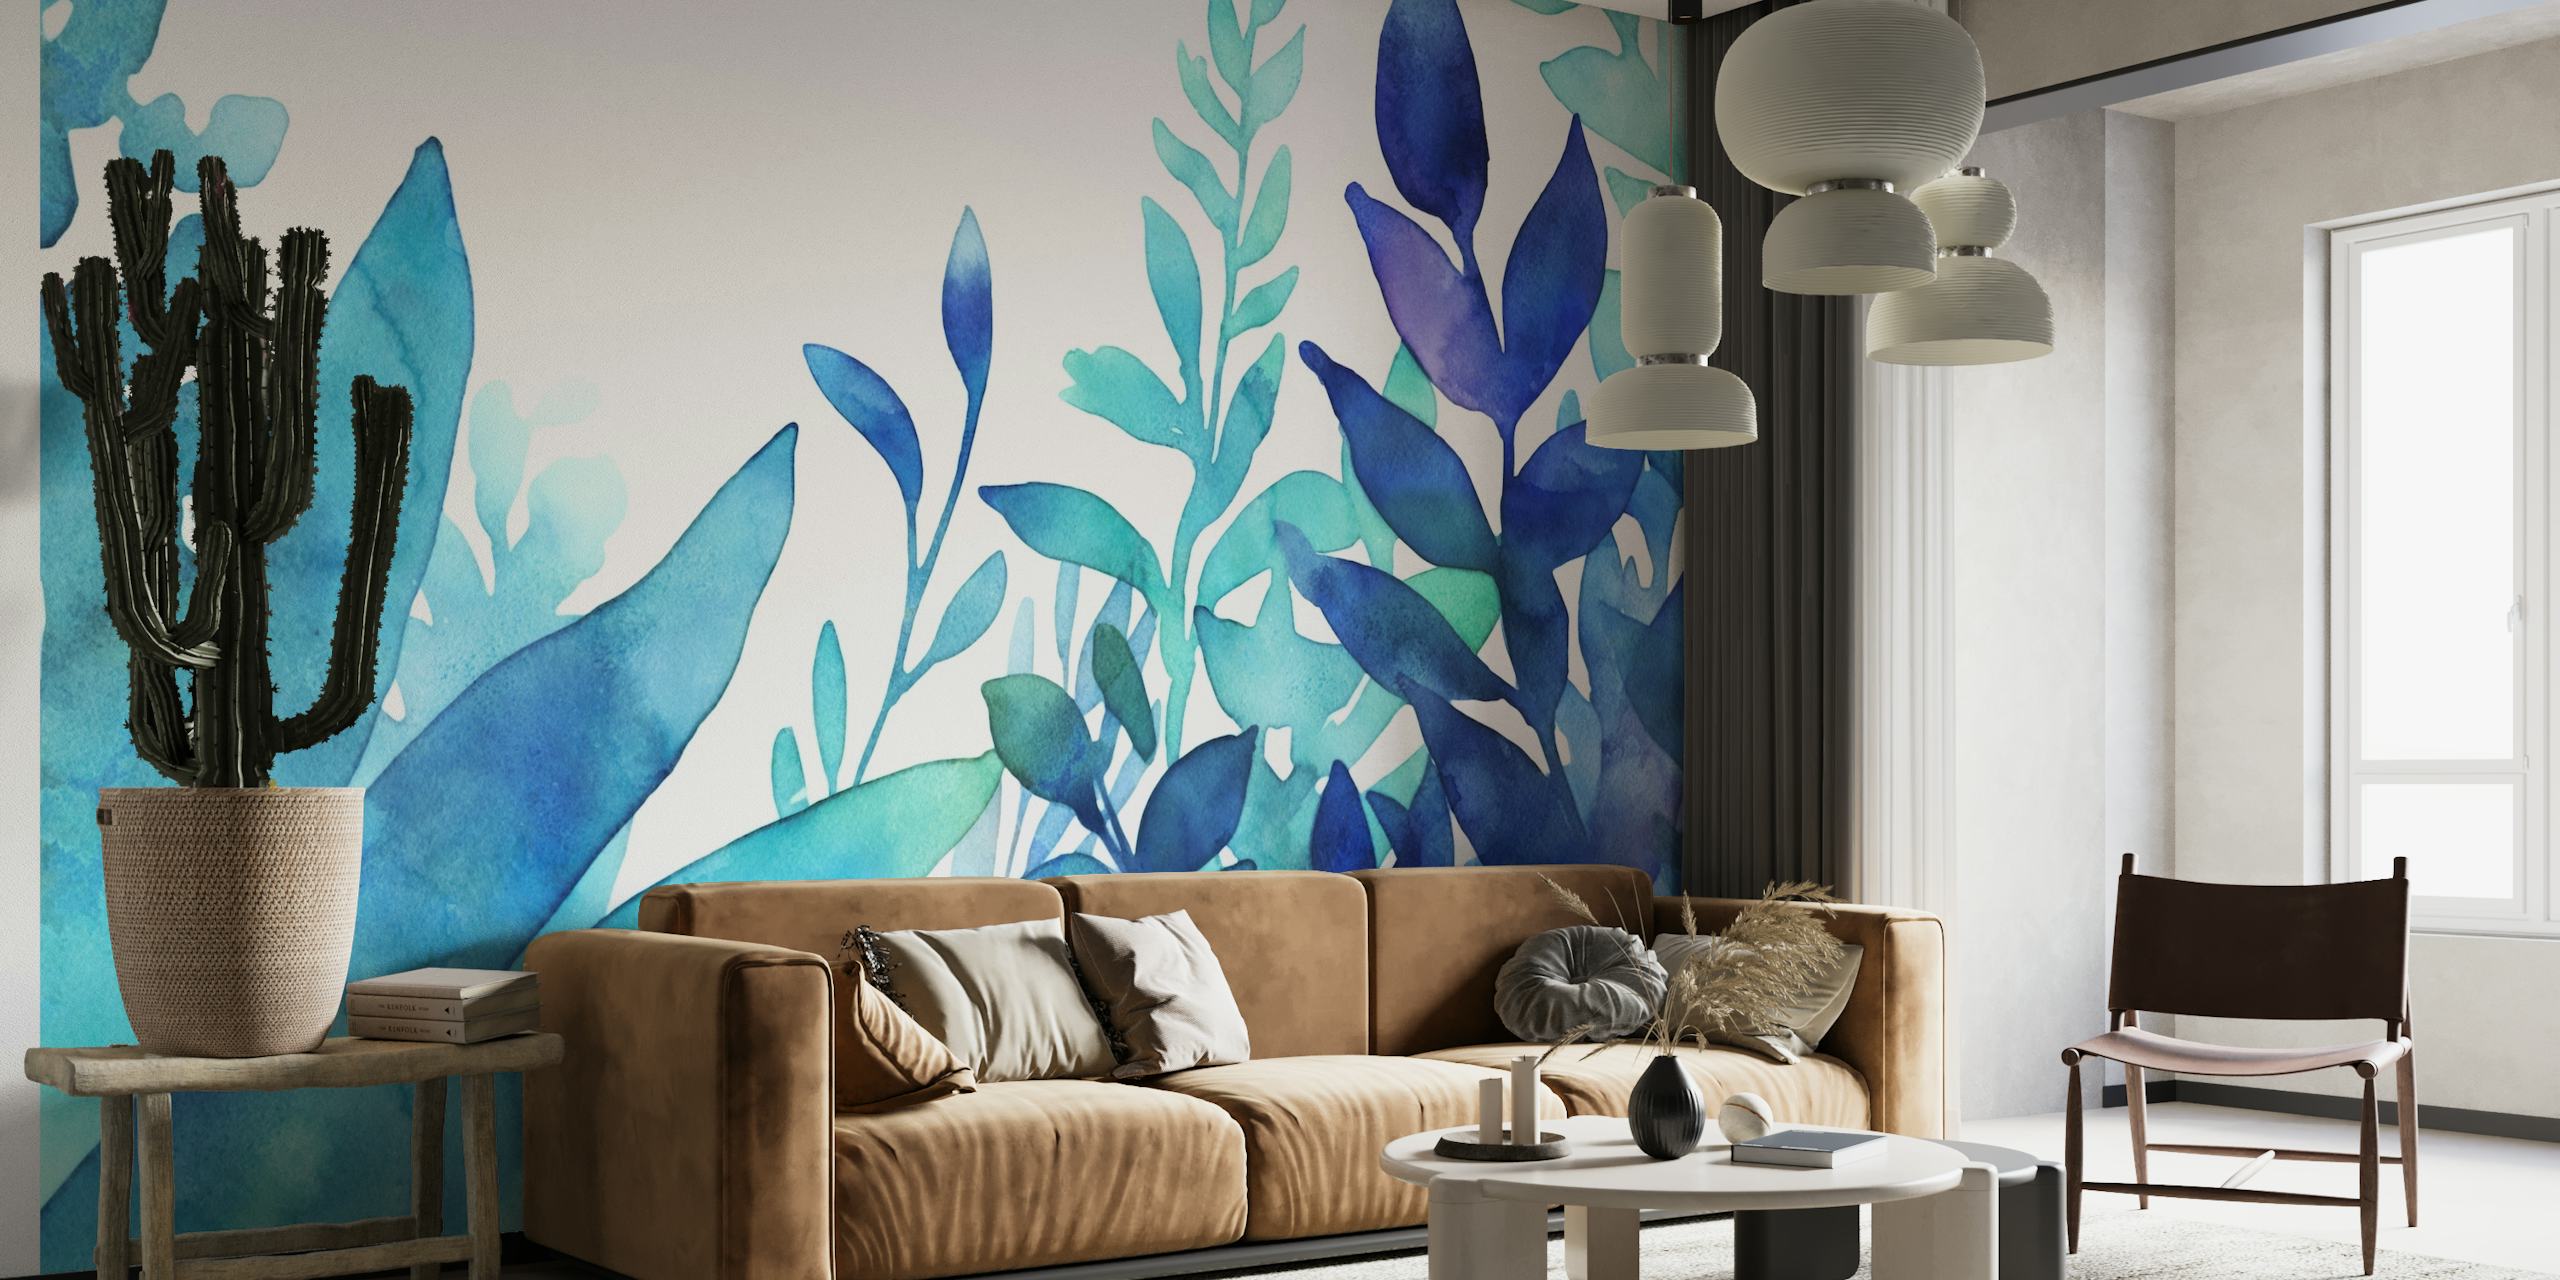 En frodig visning av turkos och blå akvarellverk för en lugn väggmålning.